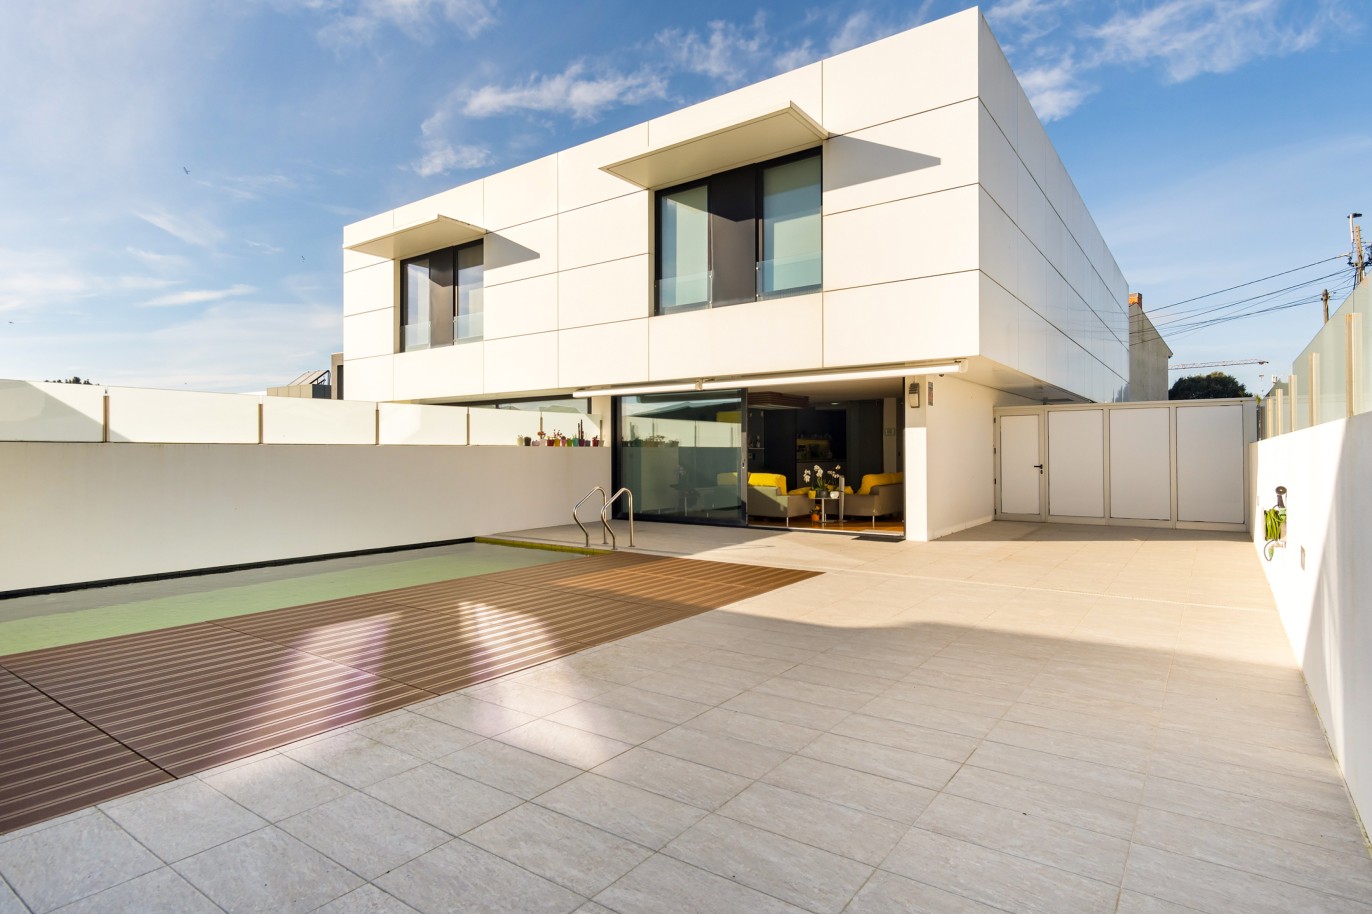 Verkauf: Villa mit Schwimmbad, in der Nähe von Madalena Strand, V. N. Gaia, Portugal_215201